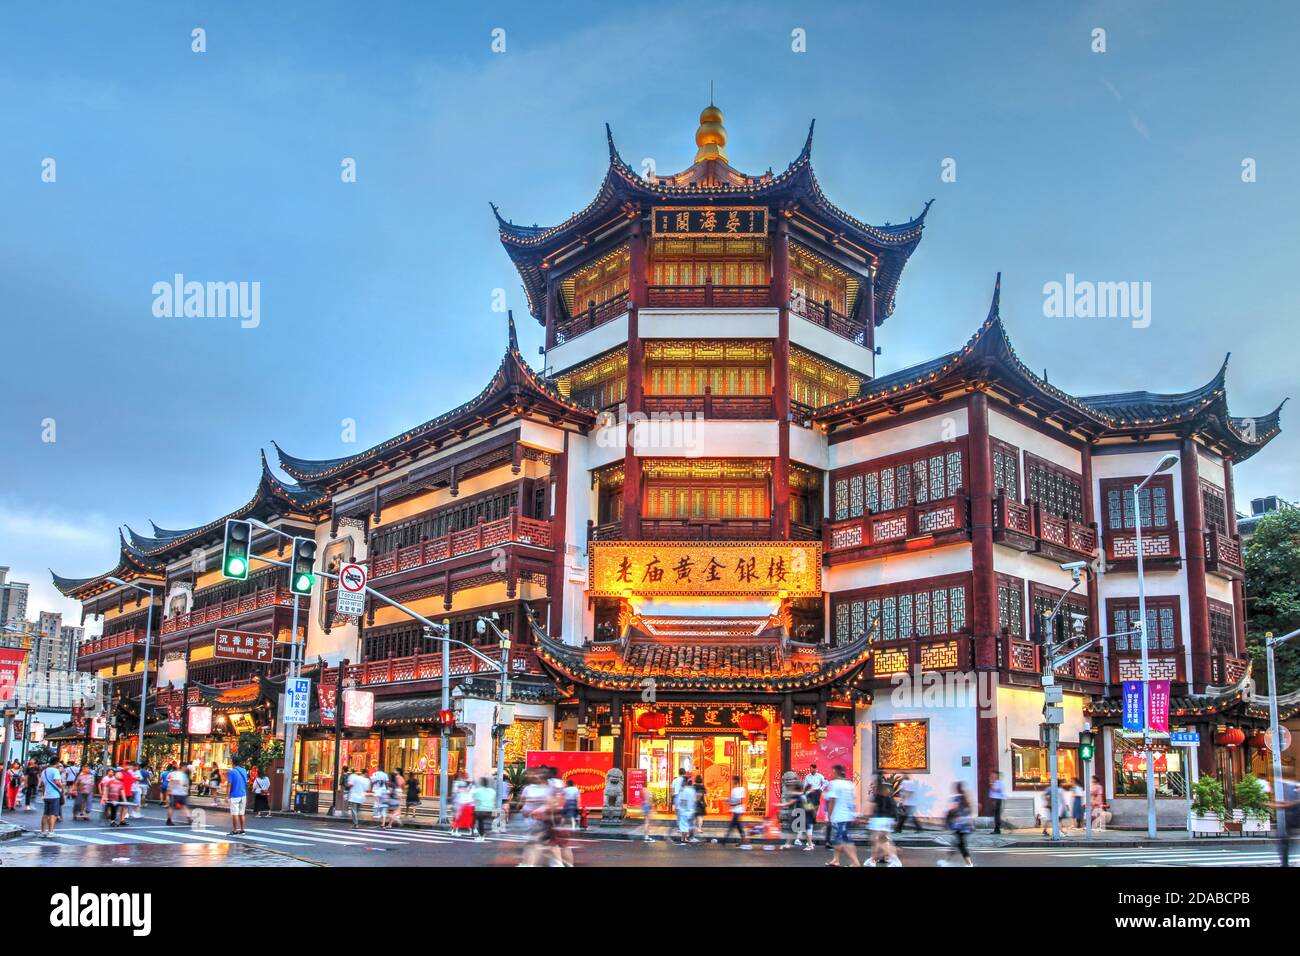 Shanghai, Chine - 4 août 2019 - scène au crépuscule dans la vieille ville de Shanghai, Chine dans les environs de Yu Gardens, avec l'un des archi traditionnels Banque D'Images